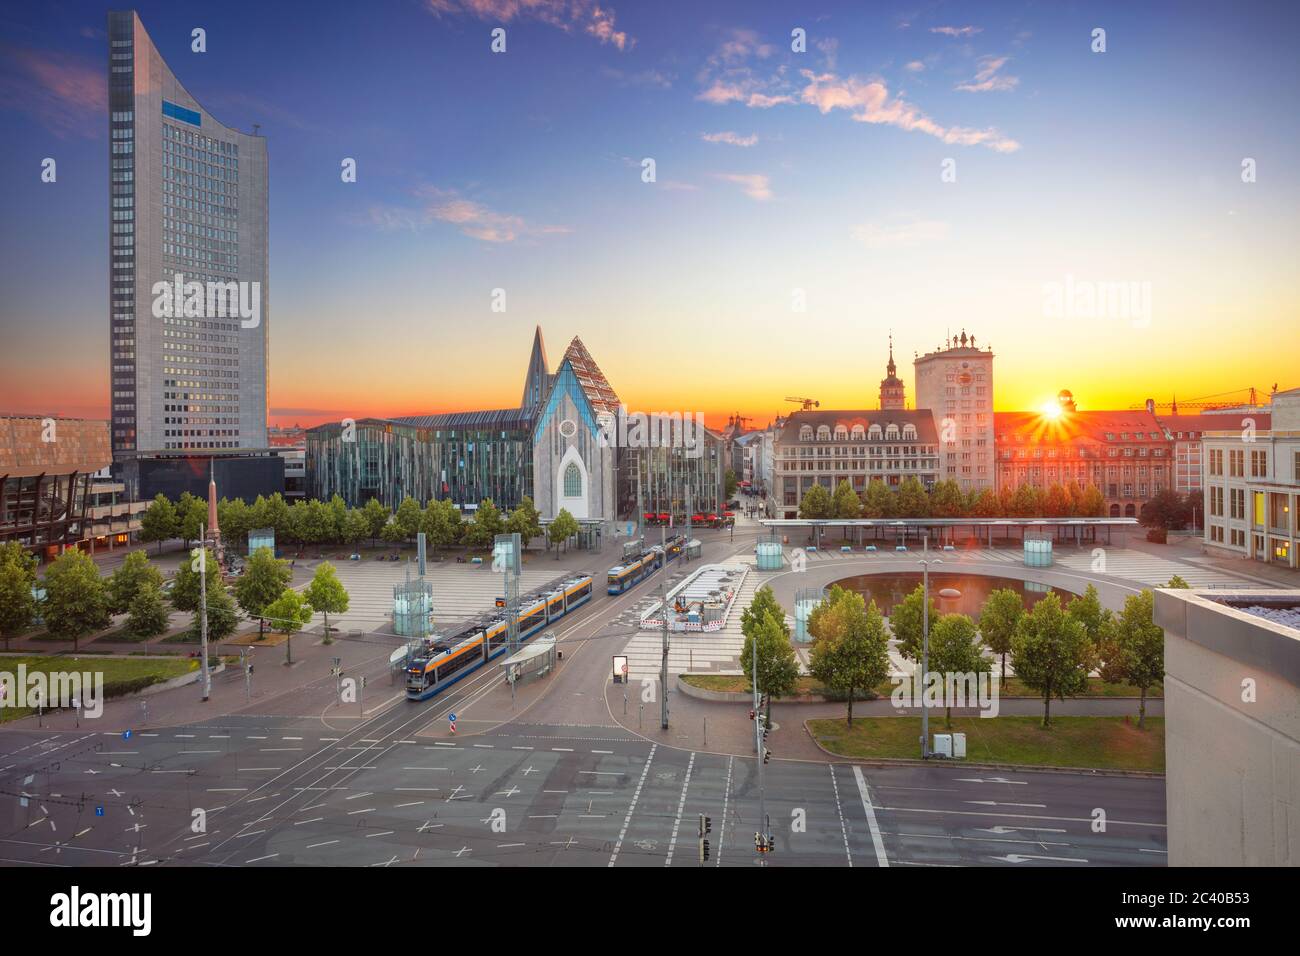 Lipsia, Germania. Immagine del paesaggio urbano del centro di Lipsia durante il bellissimo tramonto. Foto Stock